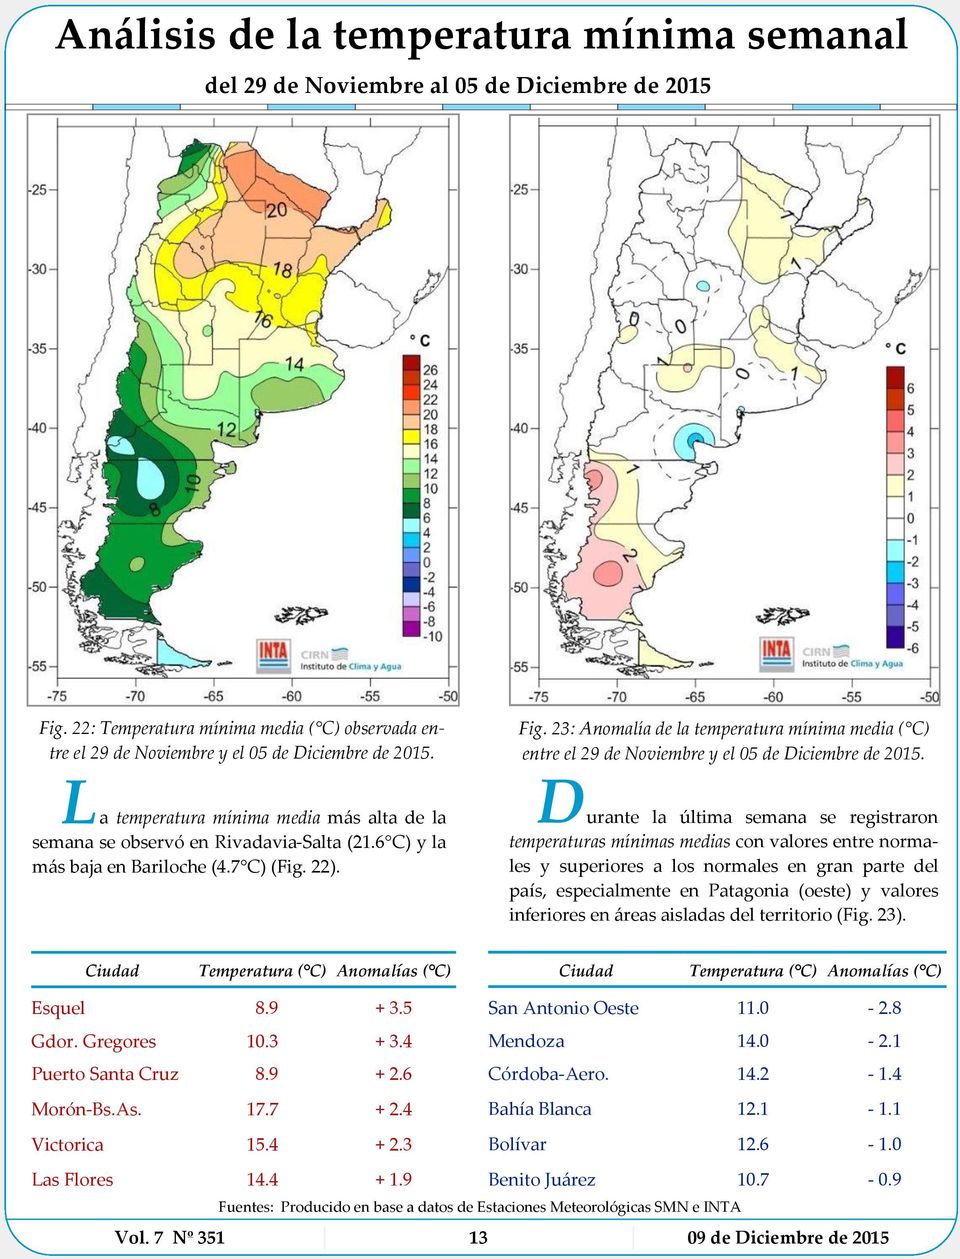 D urante la última semana se registraron temperaturas mínimas medias con valores entre normales y superiores a los normales en gran parte del país, especialmente en Patagonia (oeste) y valores